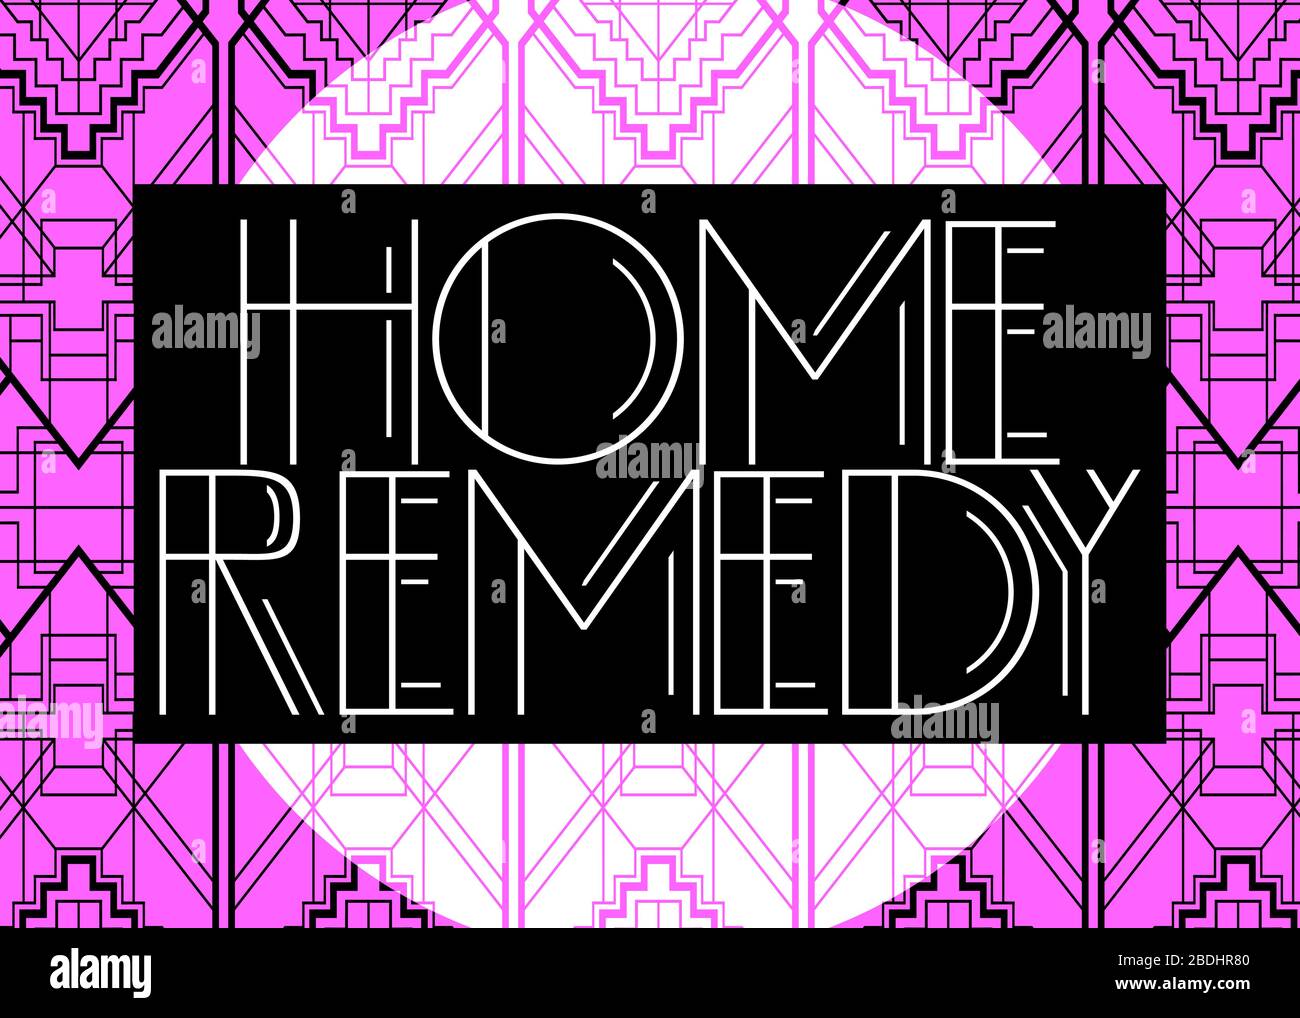 Art Deco Home Remedy text. Biglietto d'auguri decorativo, cartello con lettere d'epoca. Illustrazione Vettoriale